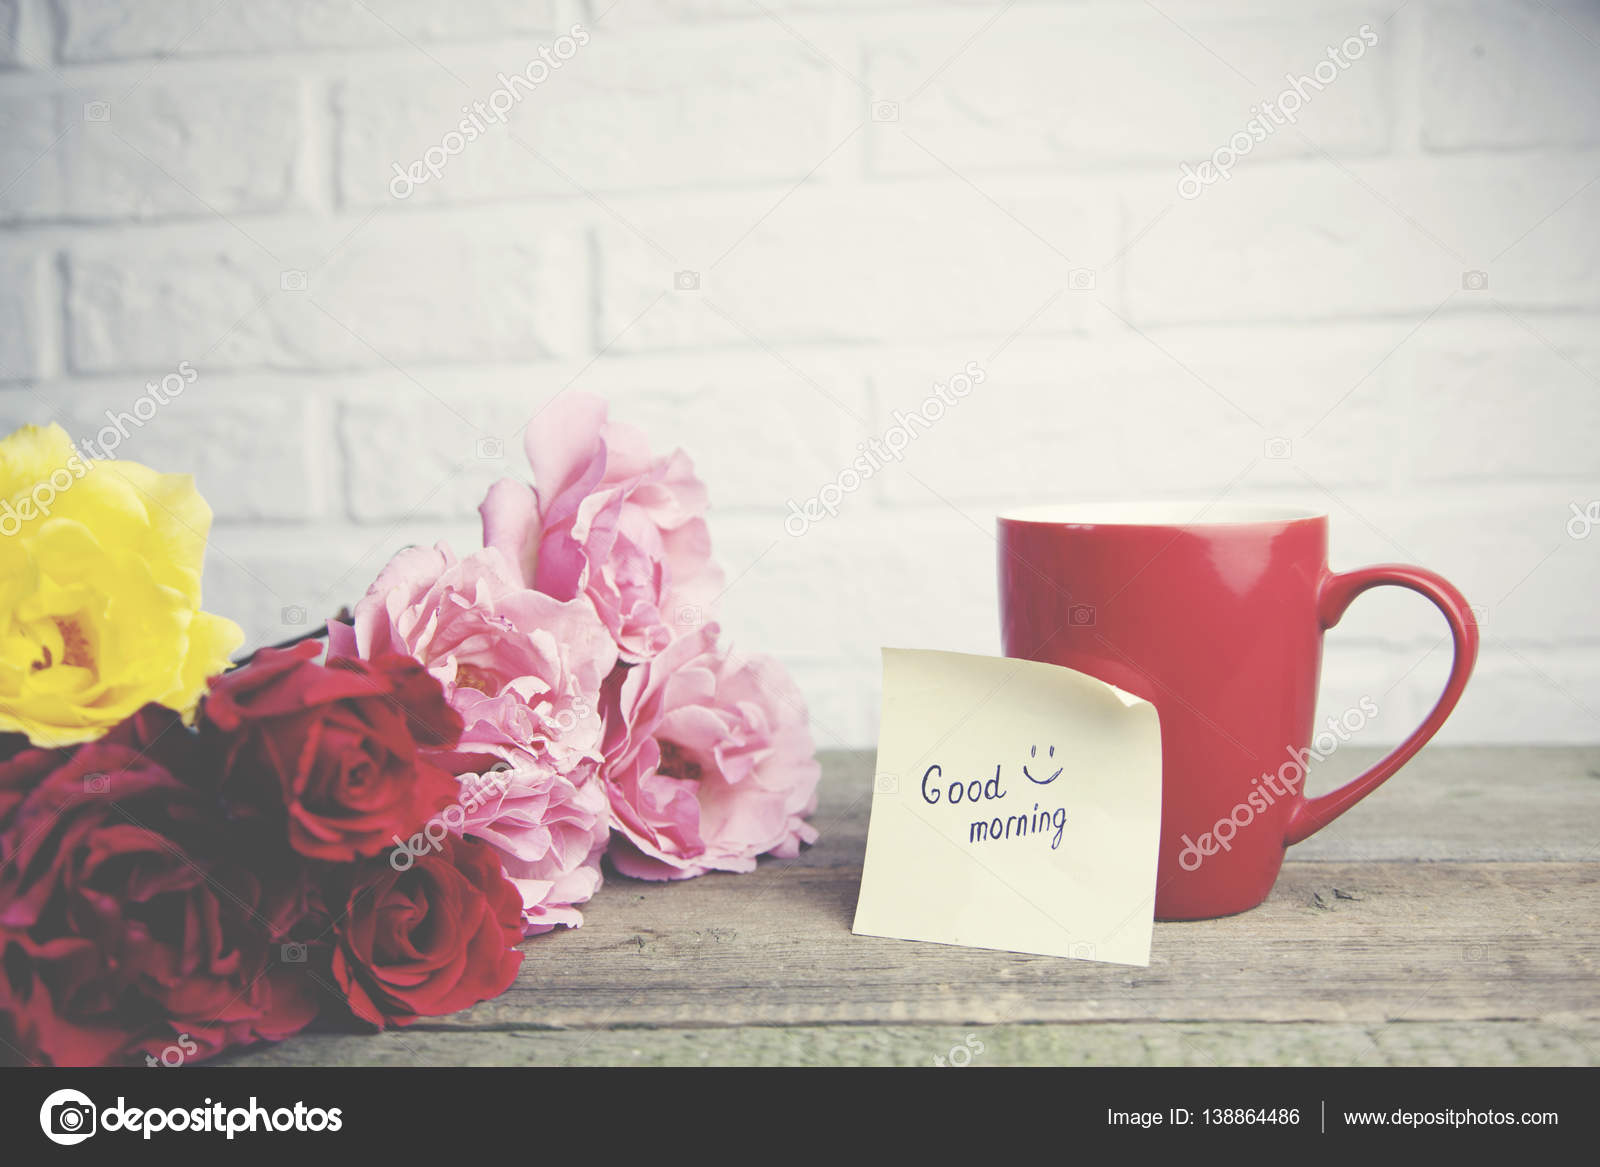 おはよう壁紙,ピンク,テキスト,静物写真,カップ,花